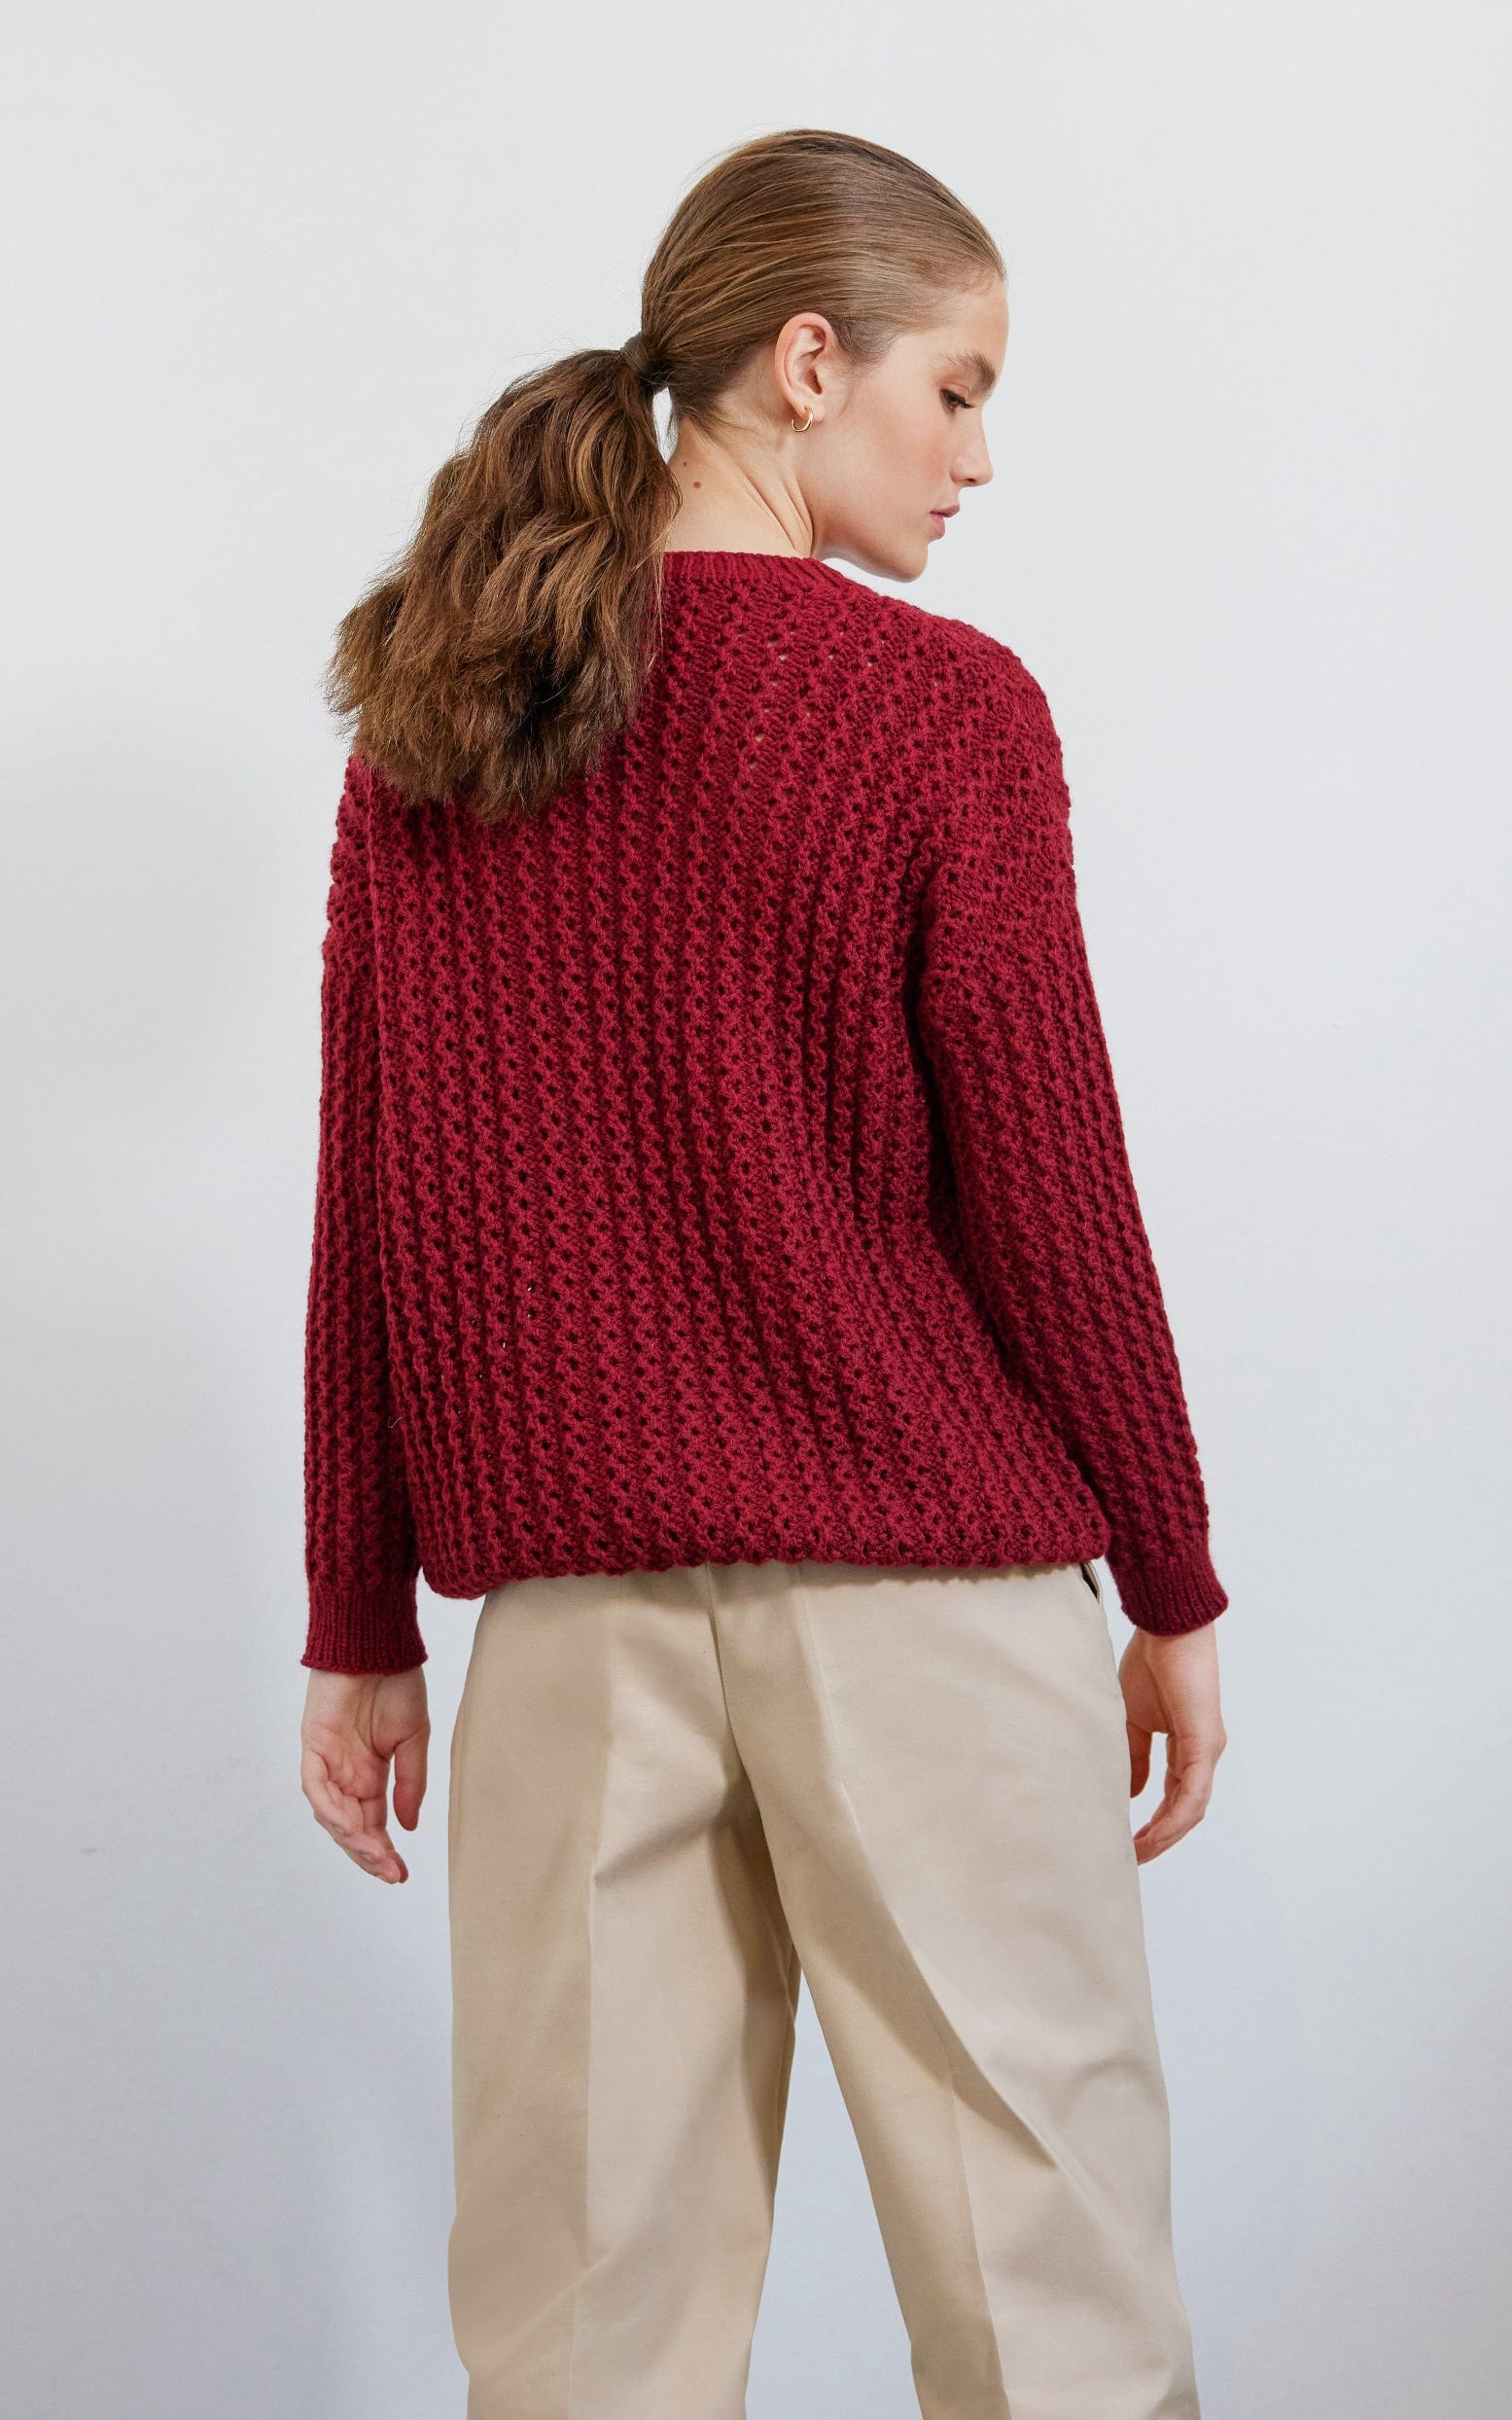 Pullover mit Lochmuster - COOL MERINO - Strickset von LANA GROSSA jetzt online kaufen bei OONIQUE